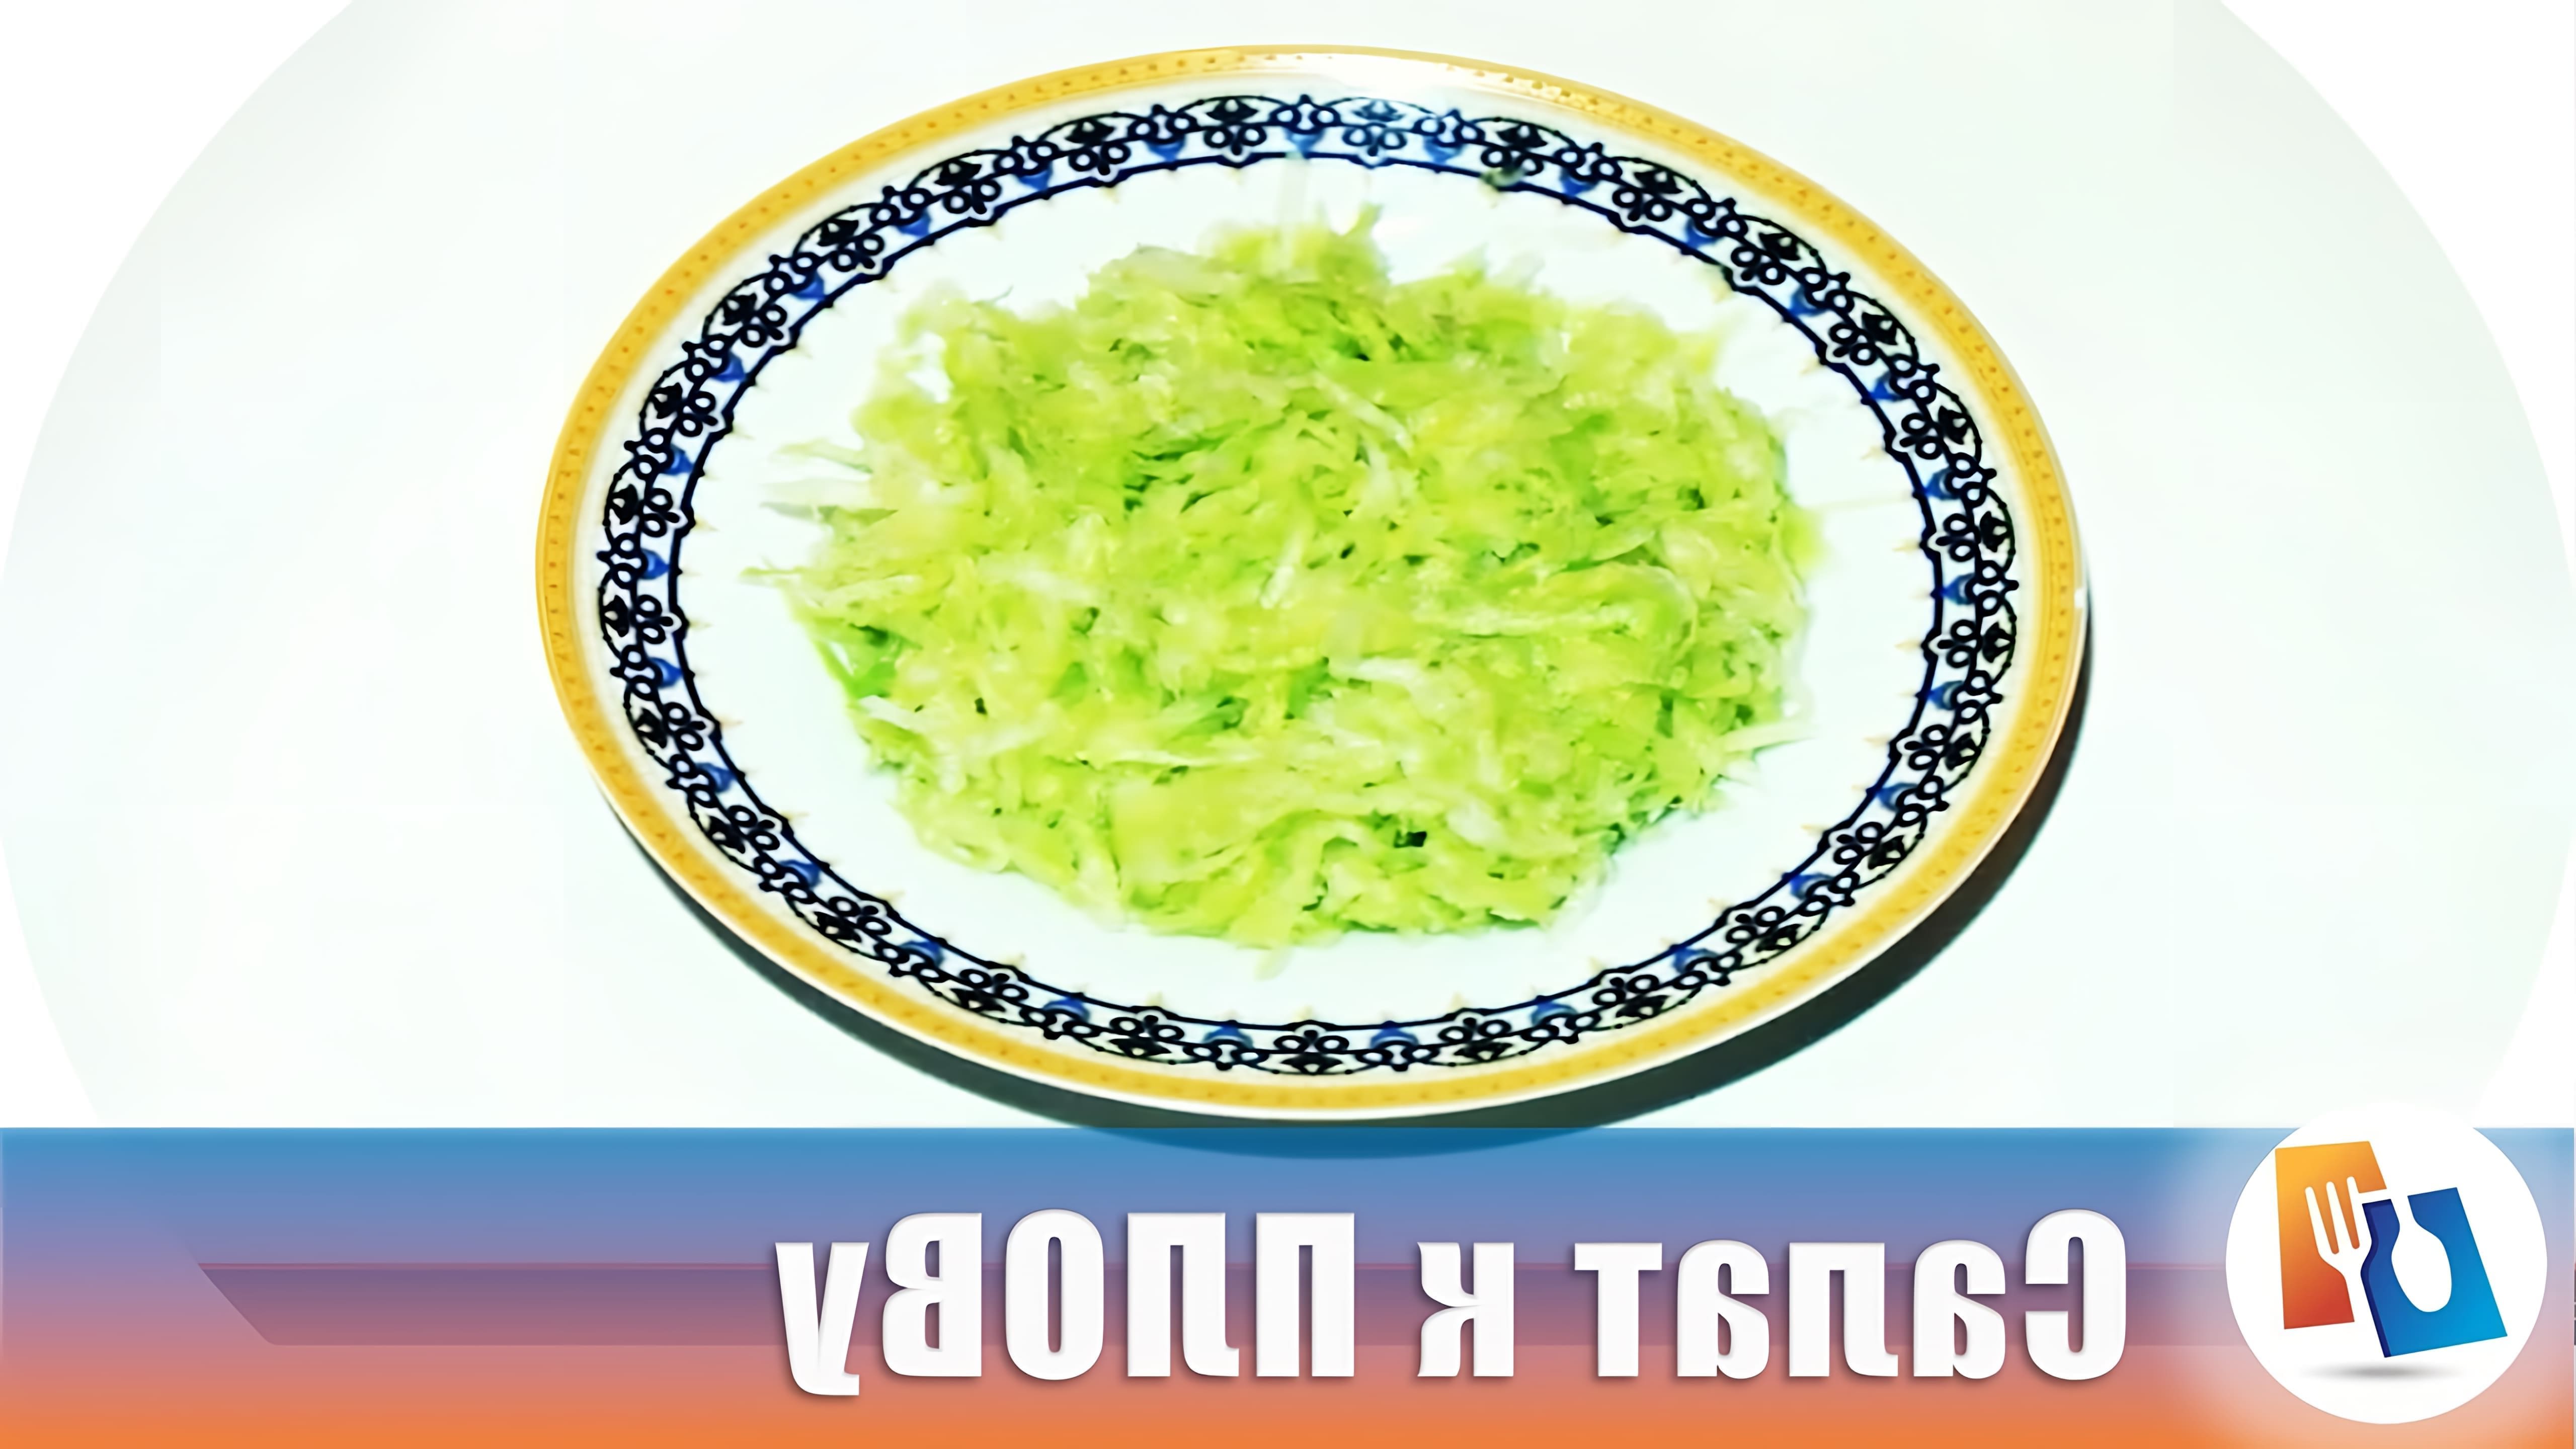 В этом видео-ролике будет представлен рецепт приготовления салата из редьки, который идеально подходит к узбекскому плову